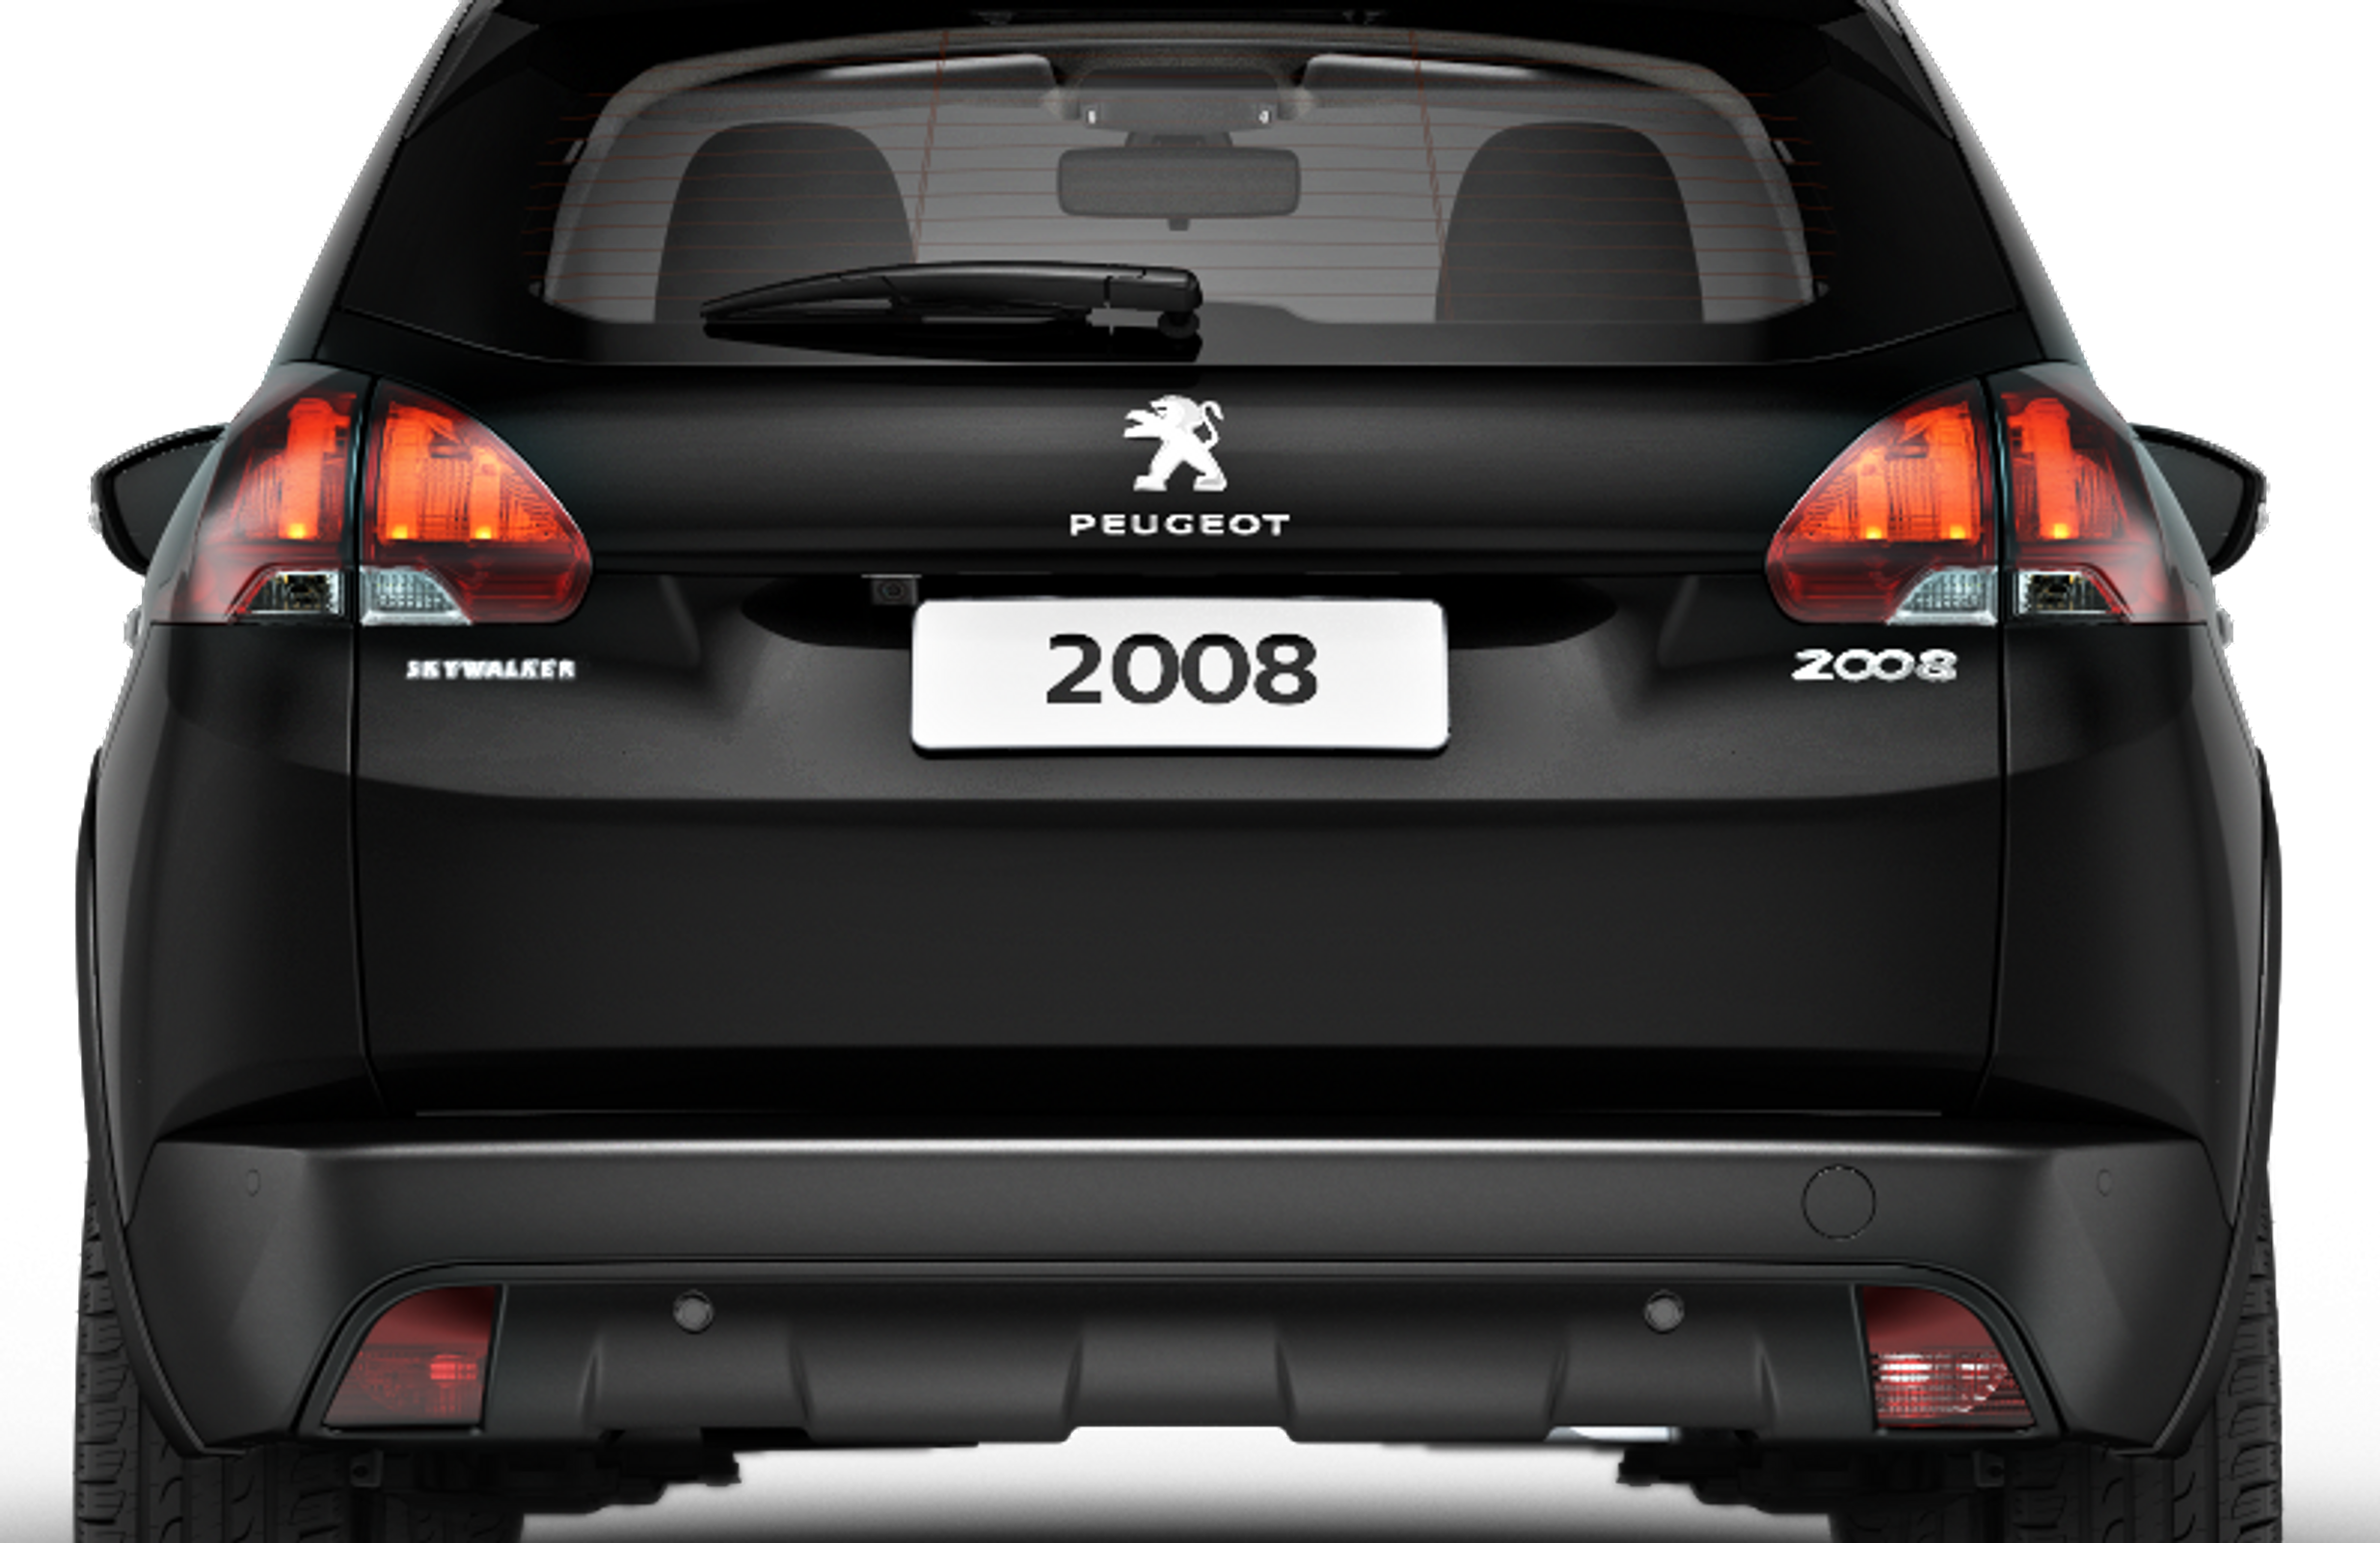 Lançamento: Série especial Peugeot 2008 SKYWALKER